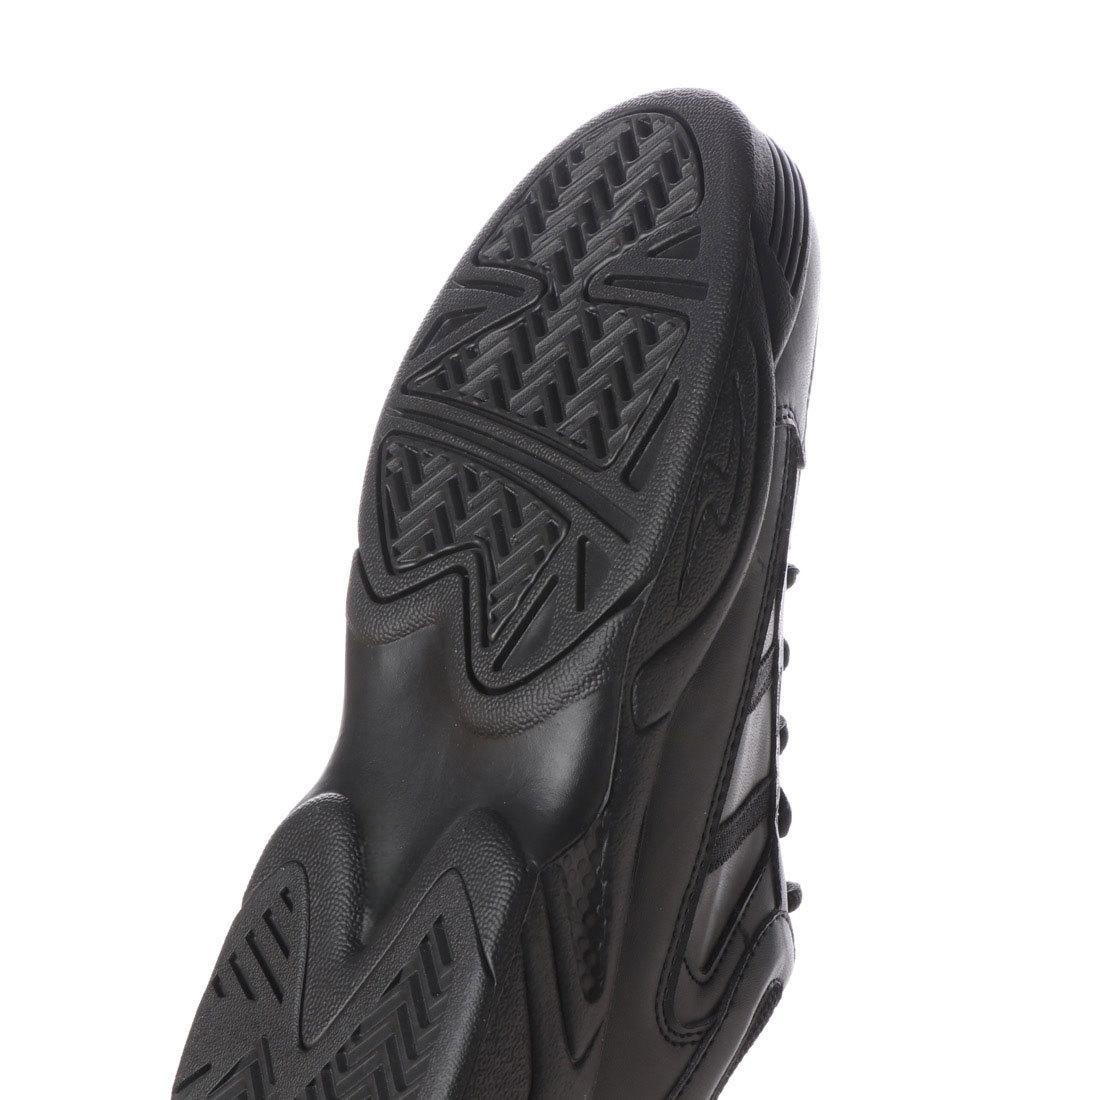 レースアップ スニーカー コートシューズ スクールシューズ 靴 ローカット 軽量 4E 幅広 通学 学生 黒 ブラック 18552-blk-260 ( 26.0cm )